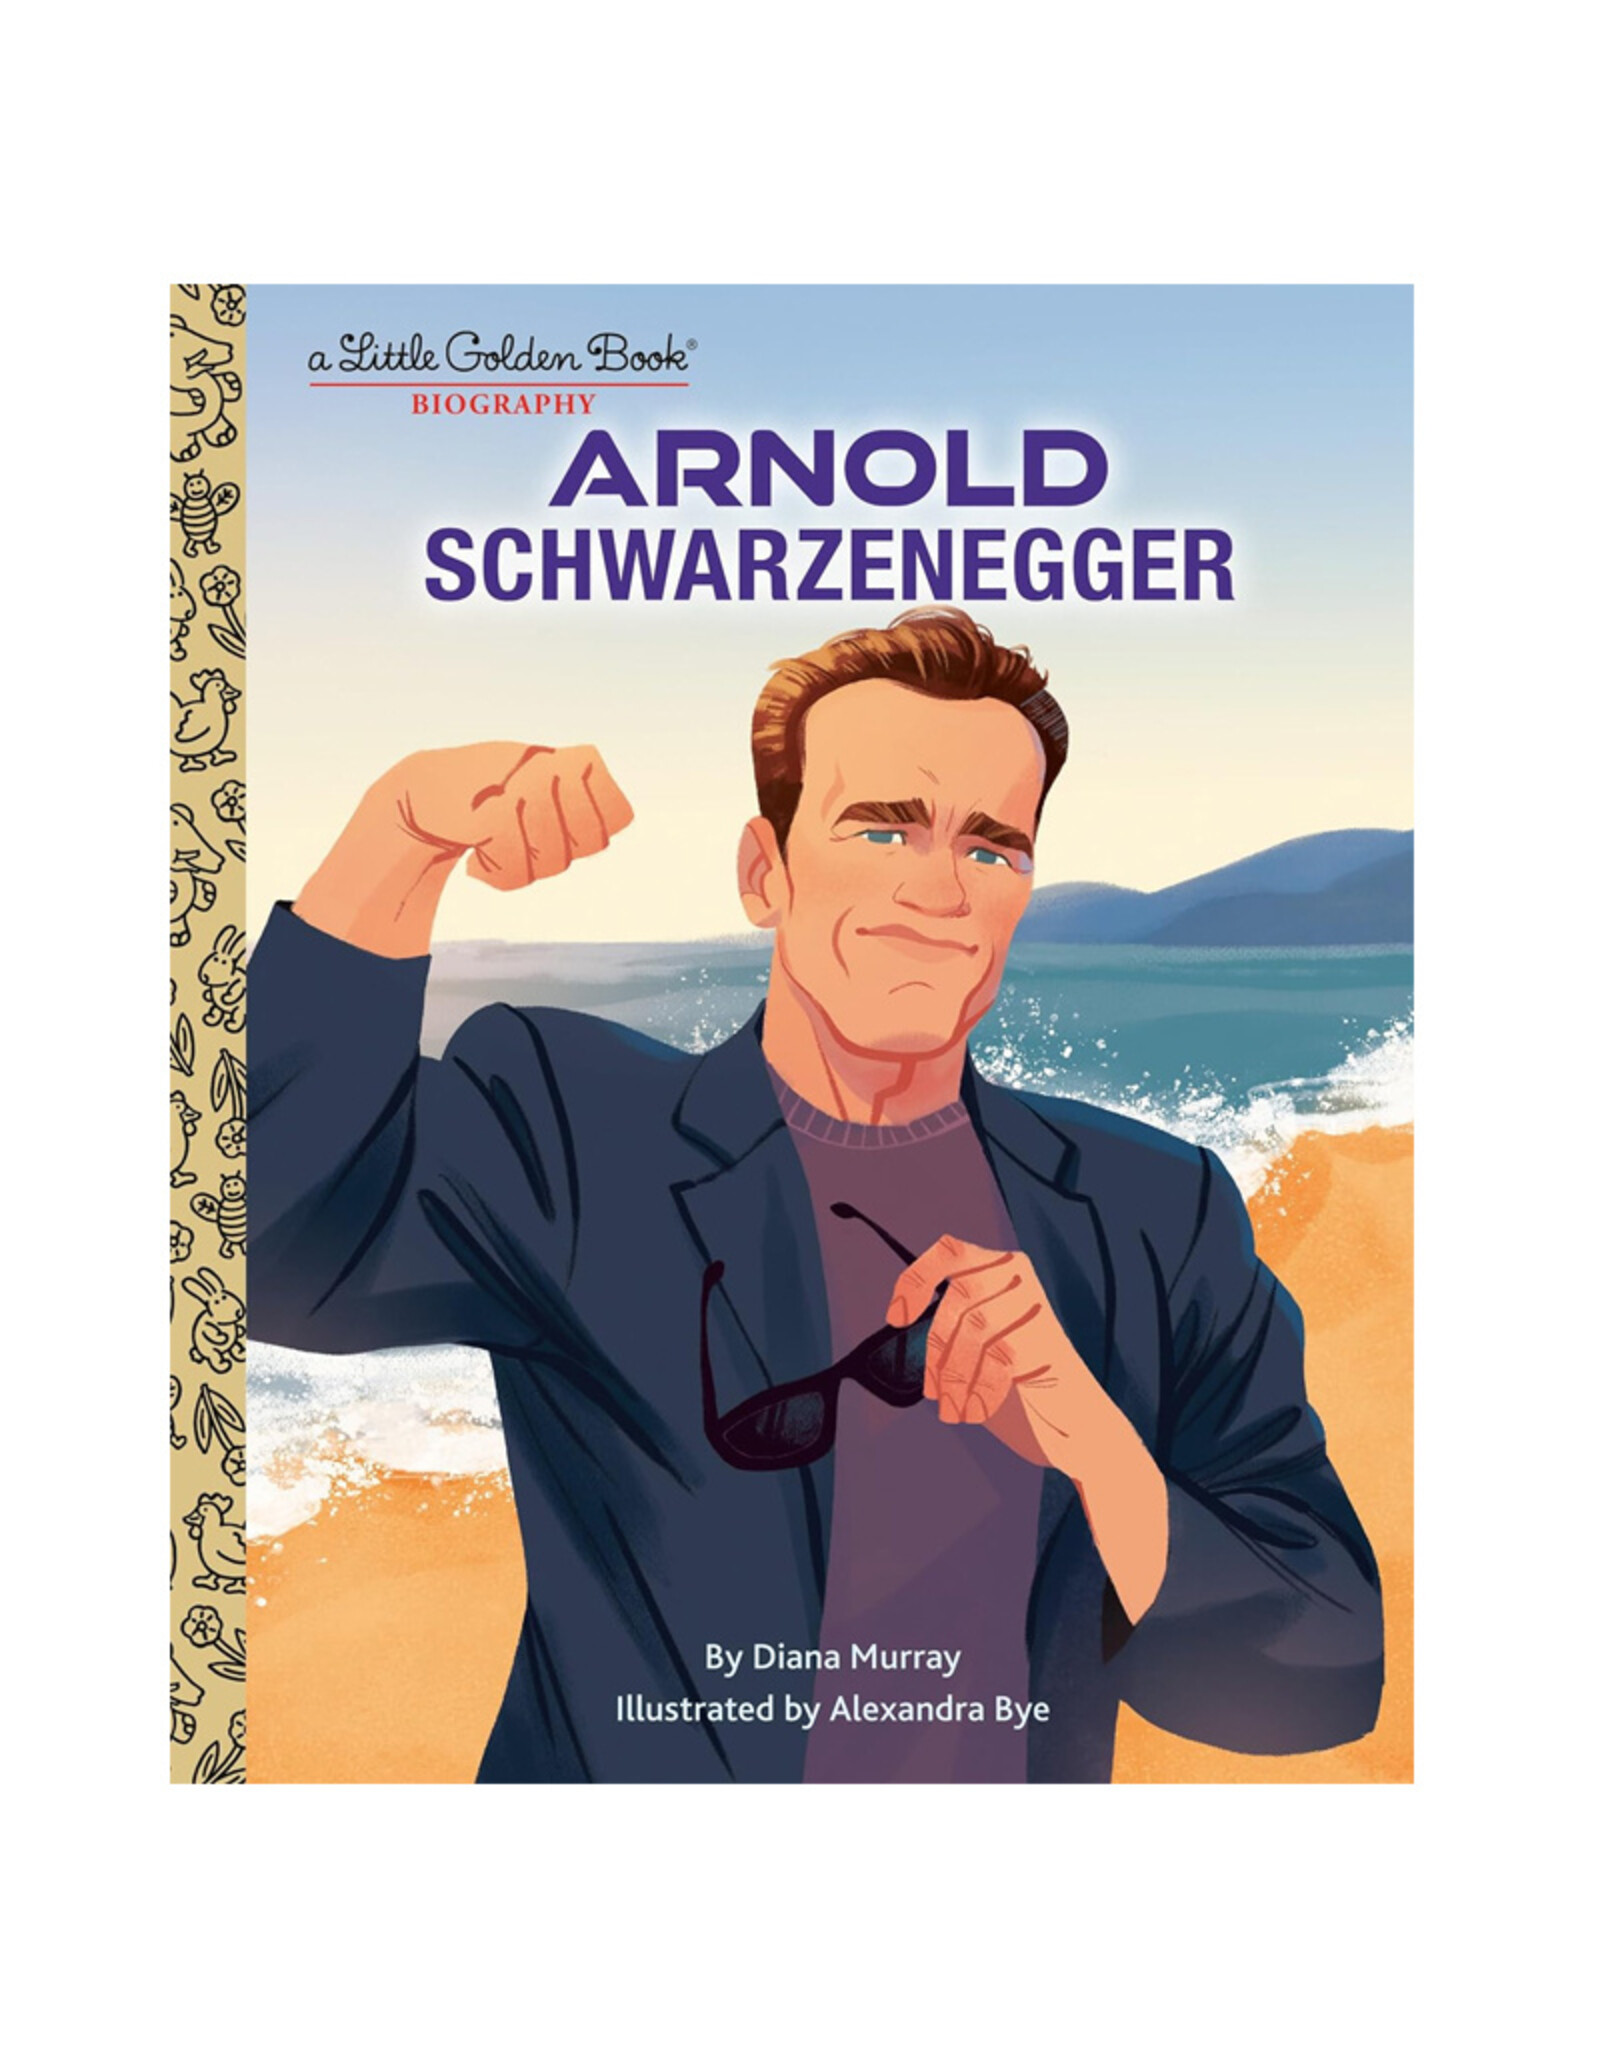 Little Golden Book Little Golden Book: Arnold Schwarzenegger